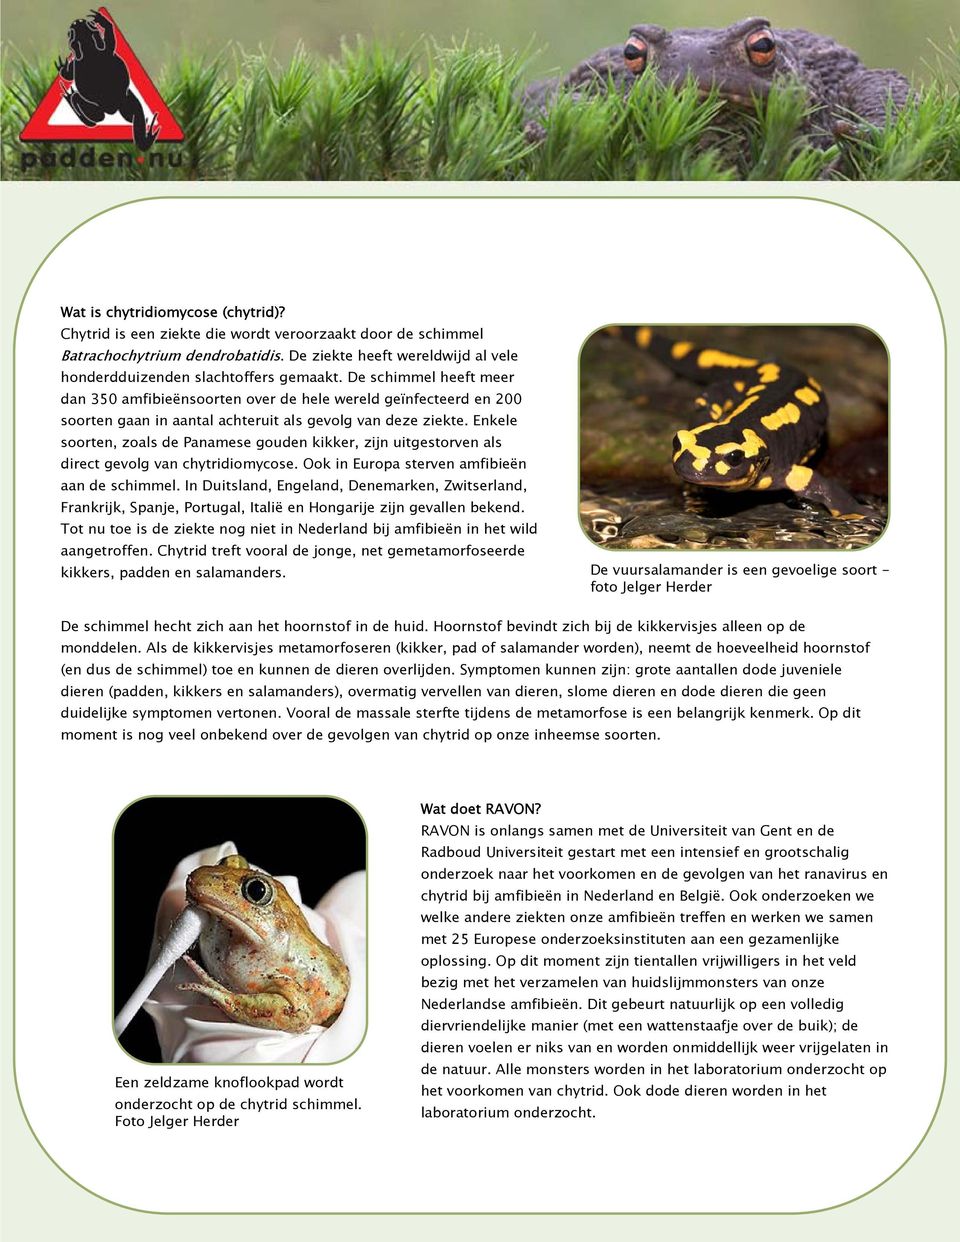 Enkele soorten, zoals de Panamese gouden kikker, zijn uitgestorven als direct gevolg van chytridiomycose. Ook in Europa sterven amfibieën aan de schimmel.